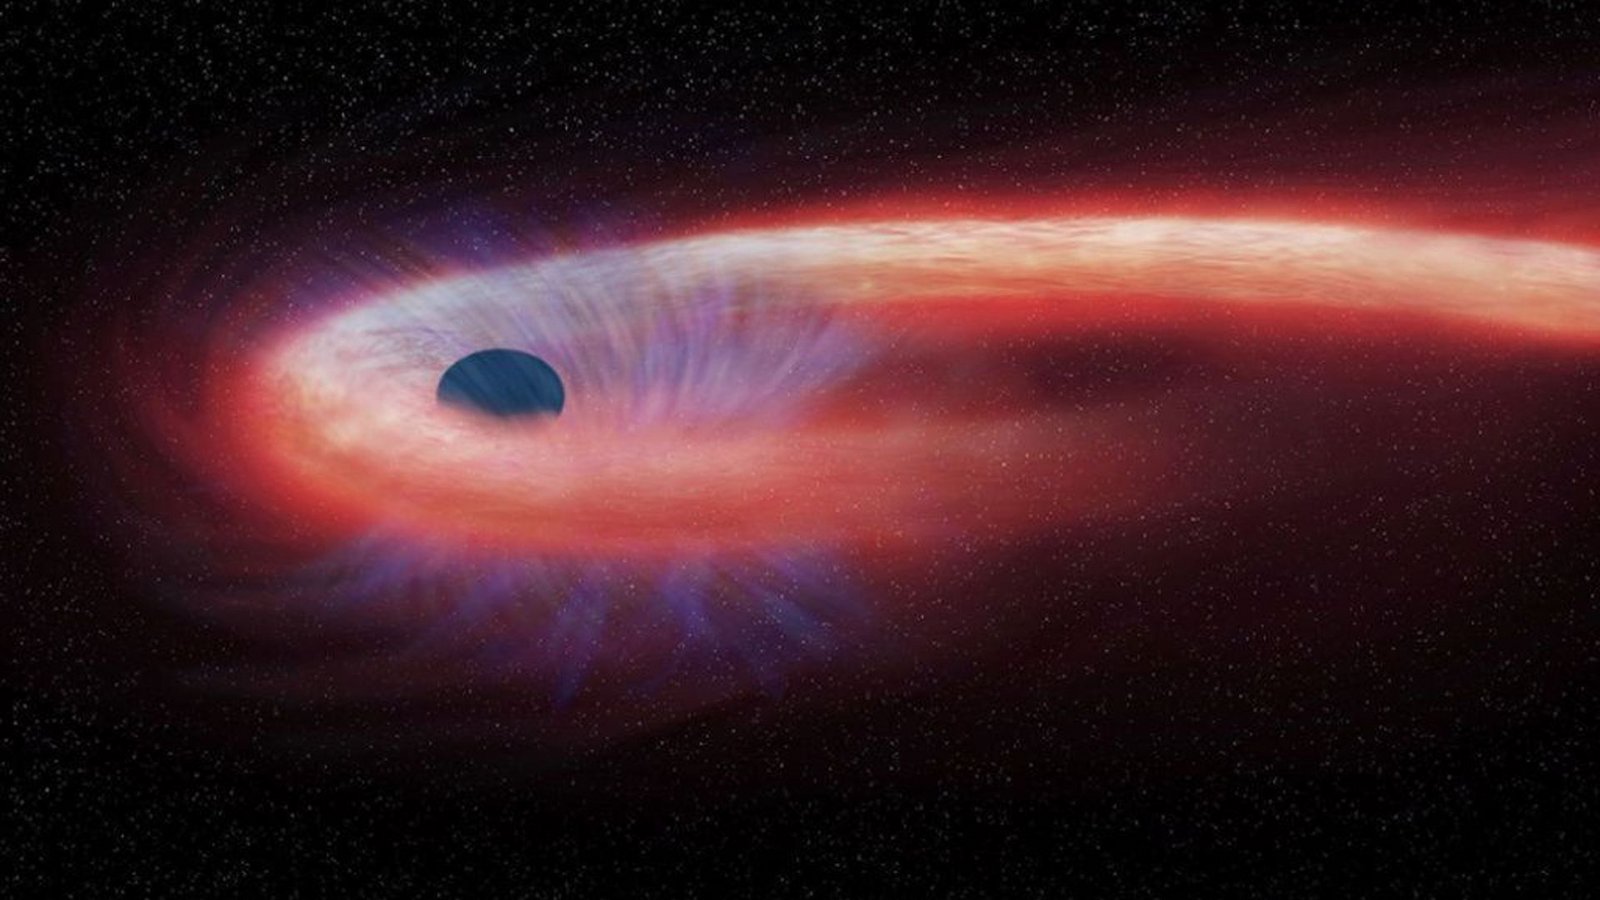 Diese von der US-Raumfahrtbehörde Nasa bereitgestellte grafische Darstellung zeigt einen Stern, der von einem schwarzen Loch geschluckt wird und dabei einen roten Schweif aus Röntgenstrahlen hinter sich lässt.Foto: Nasa/Chandra X-ray Observatory/AP/dpa